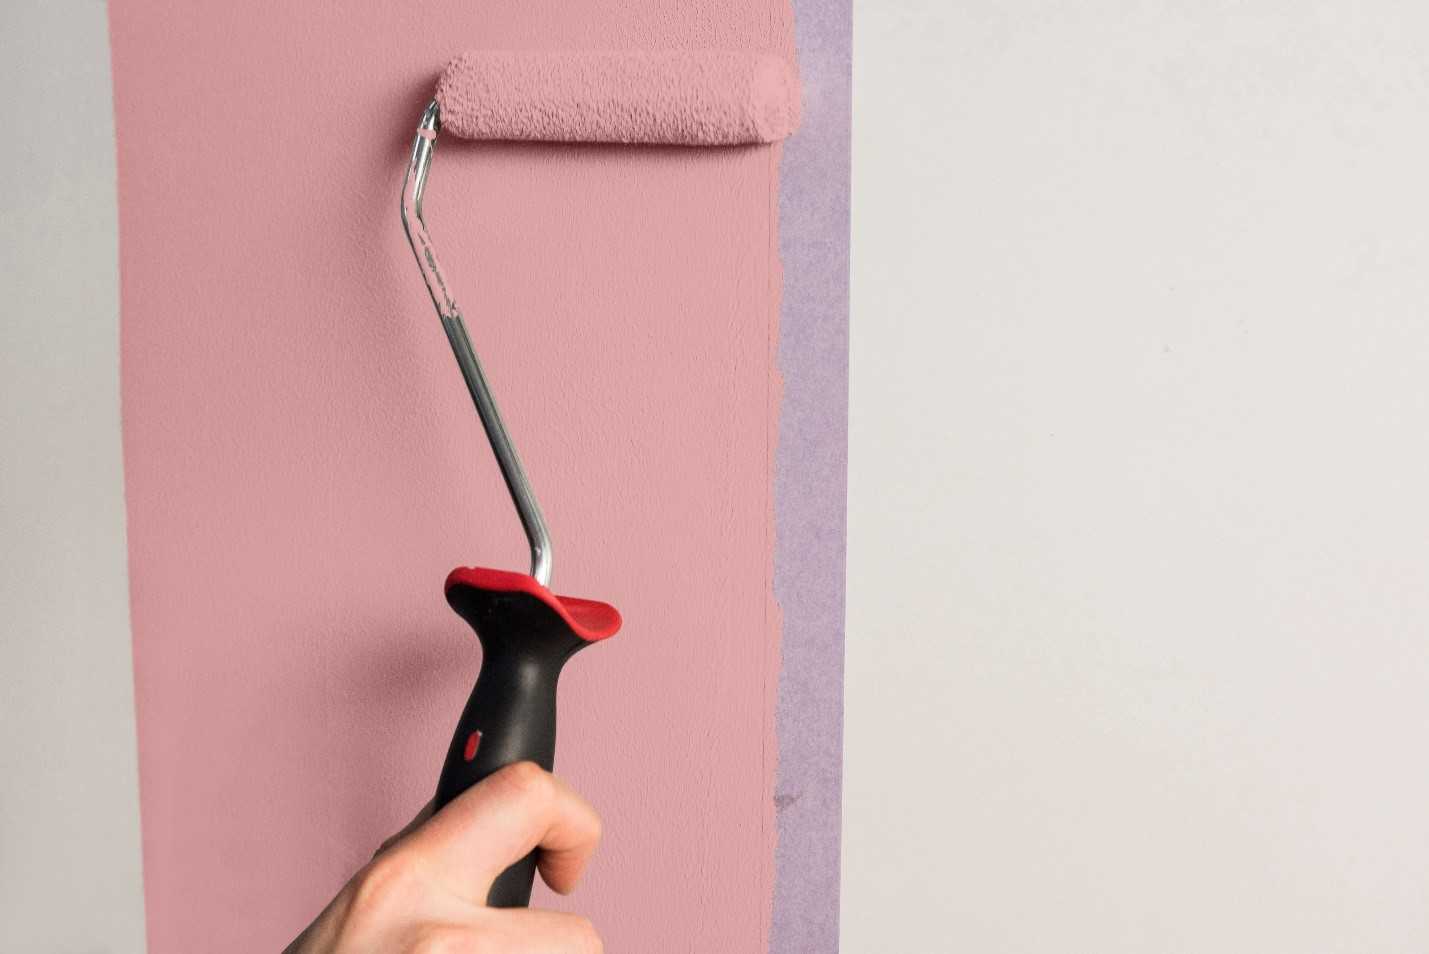 Покраска стен в квартире, преимущества - фото примеров